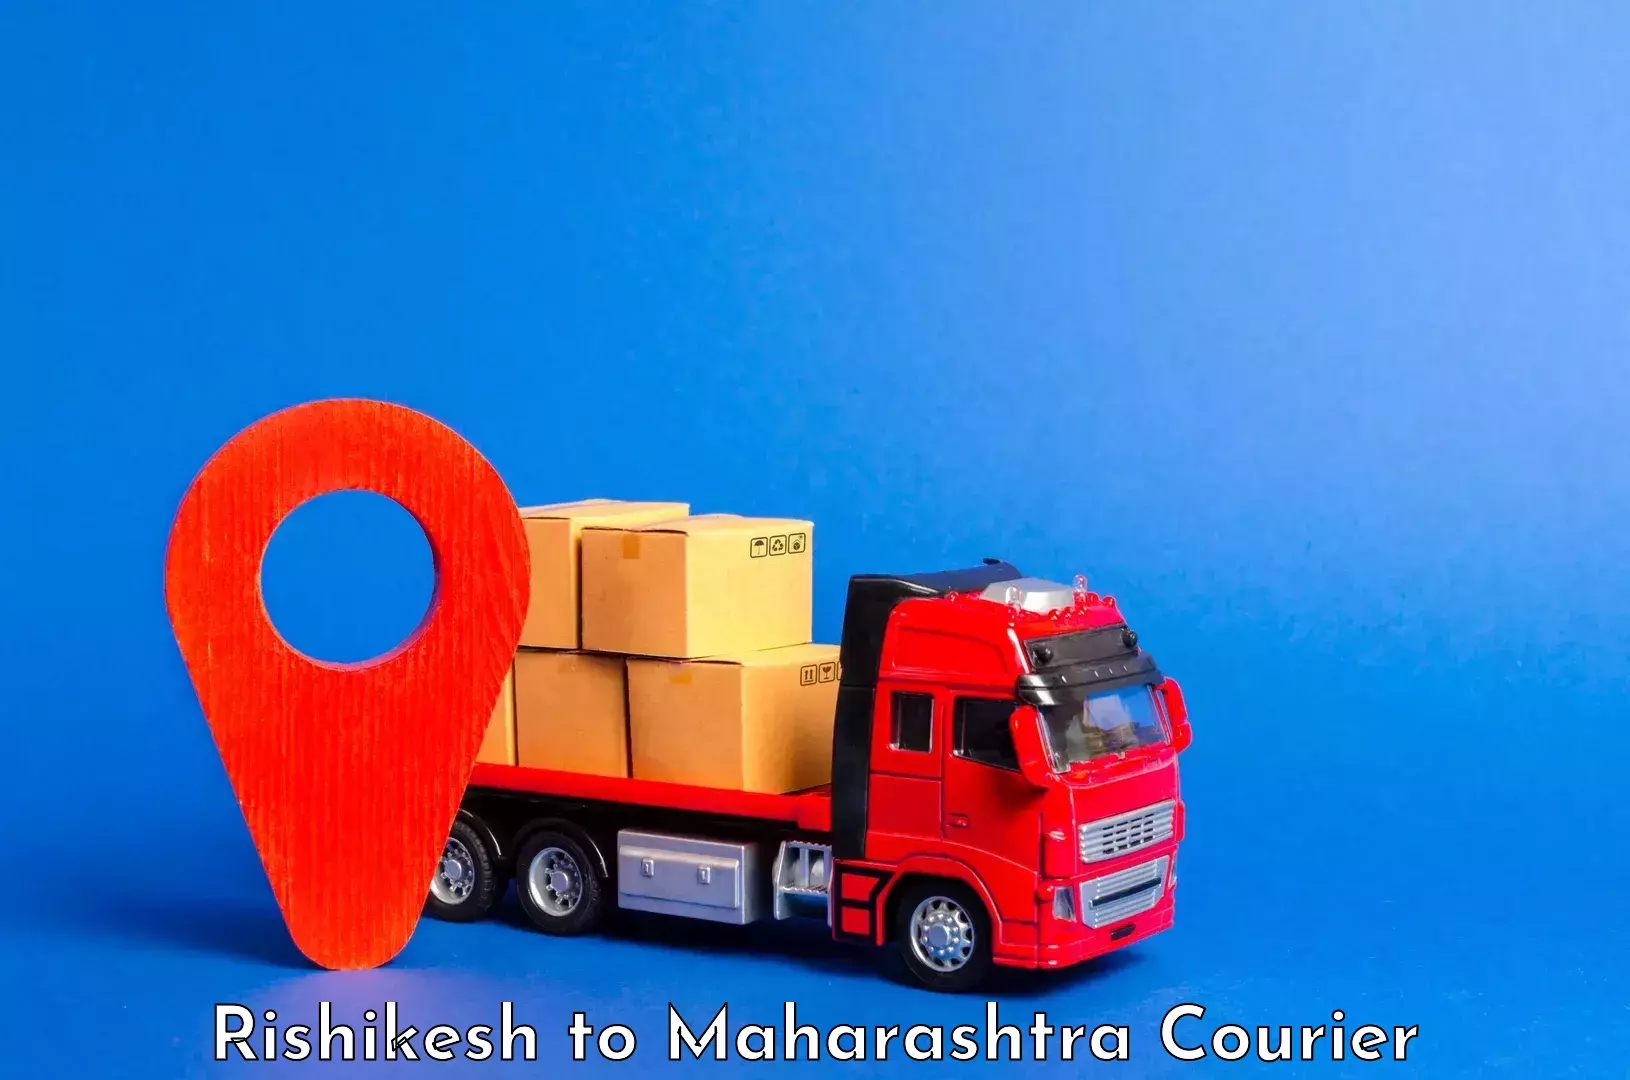 Luggage delivery system Rishikesh to Maharashtra